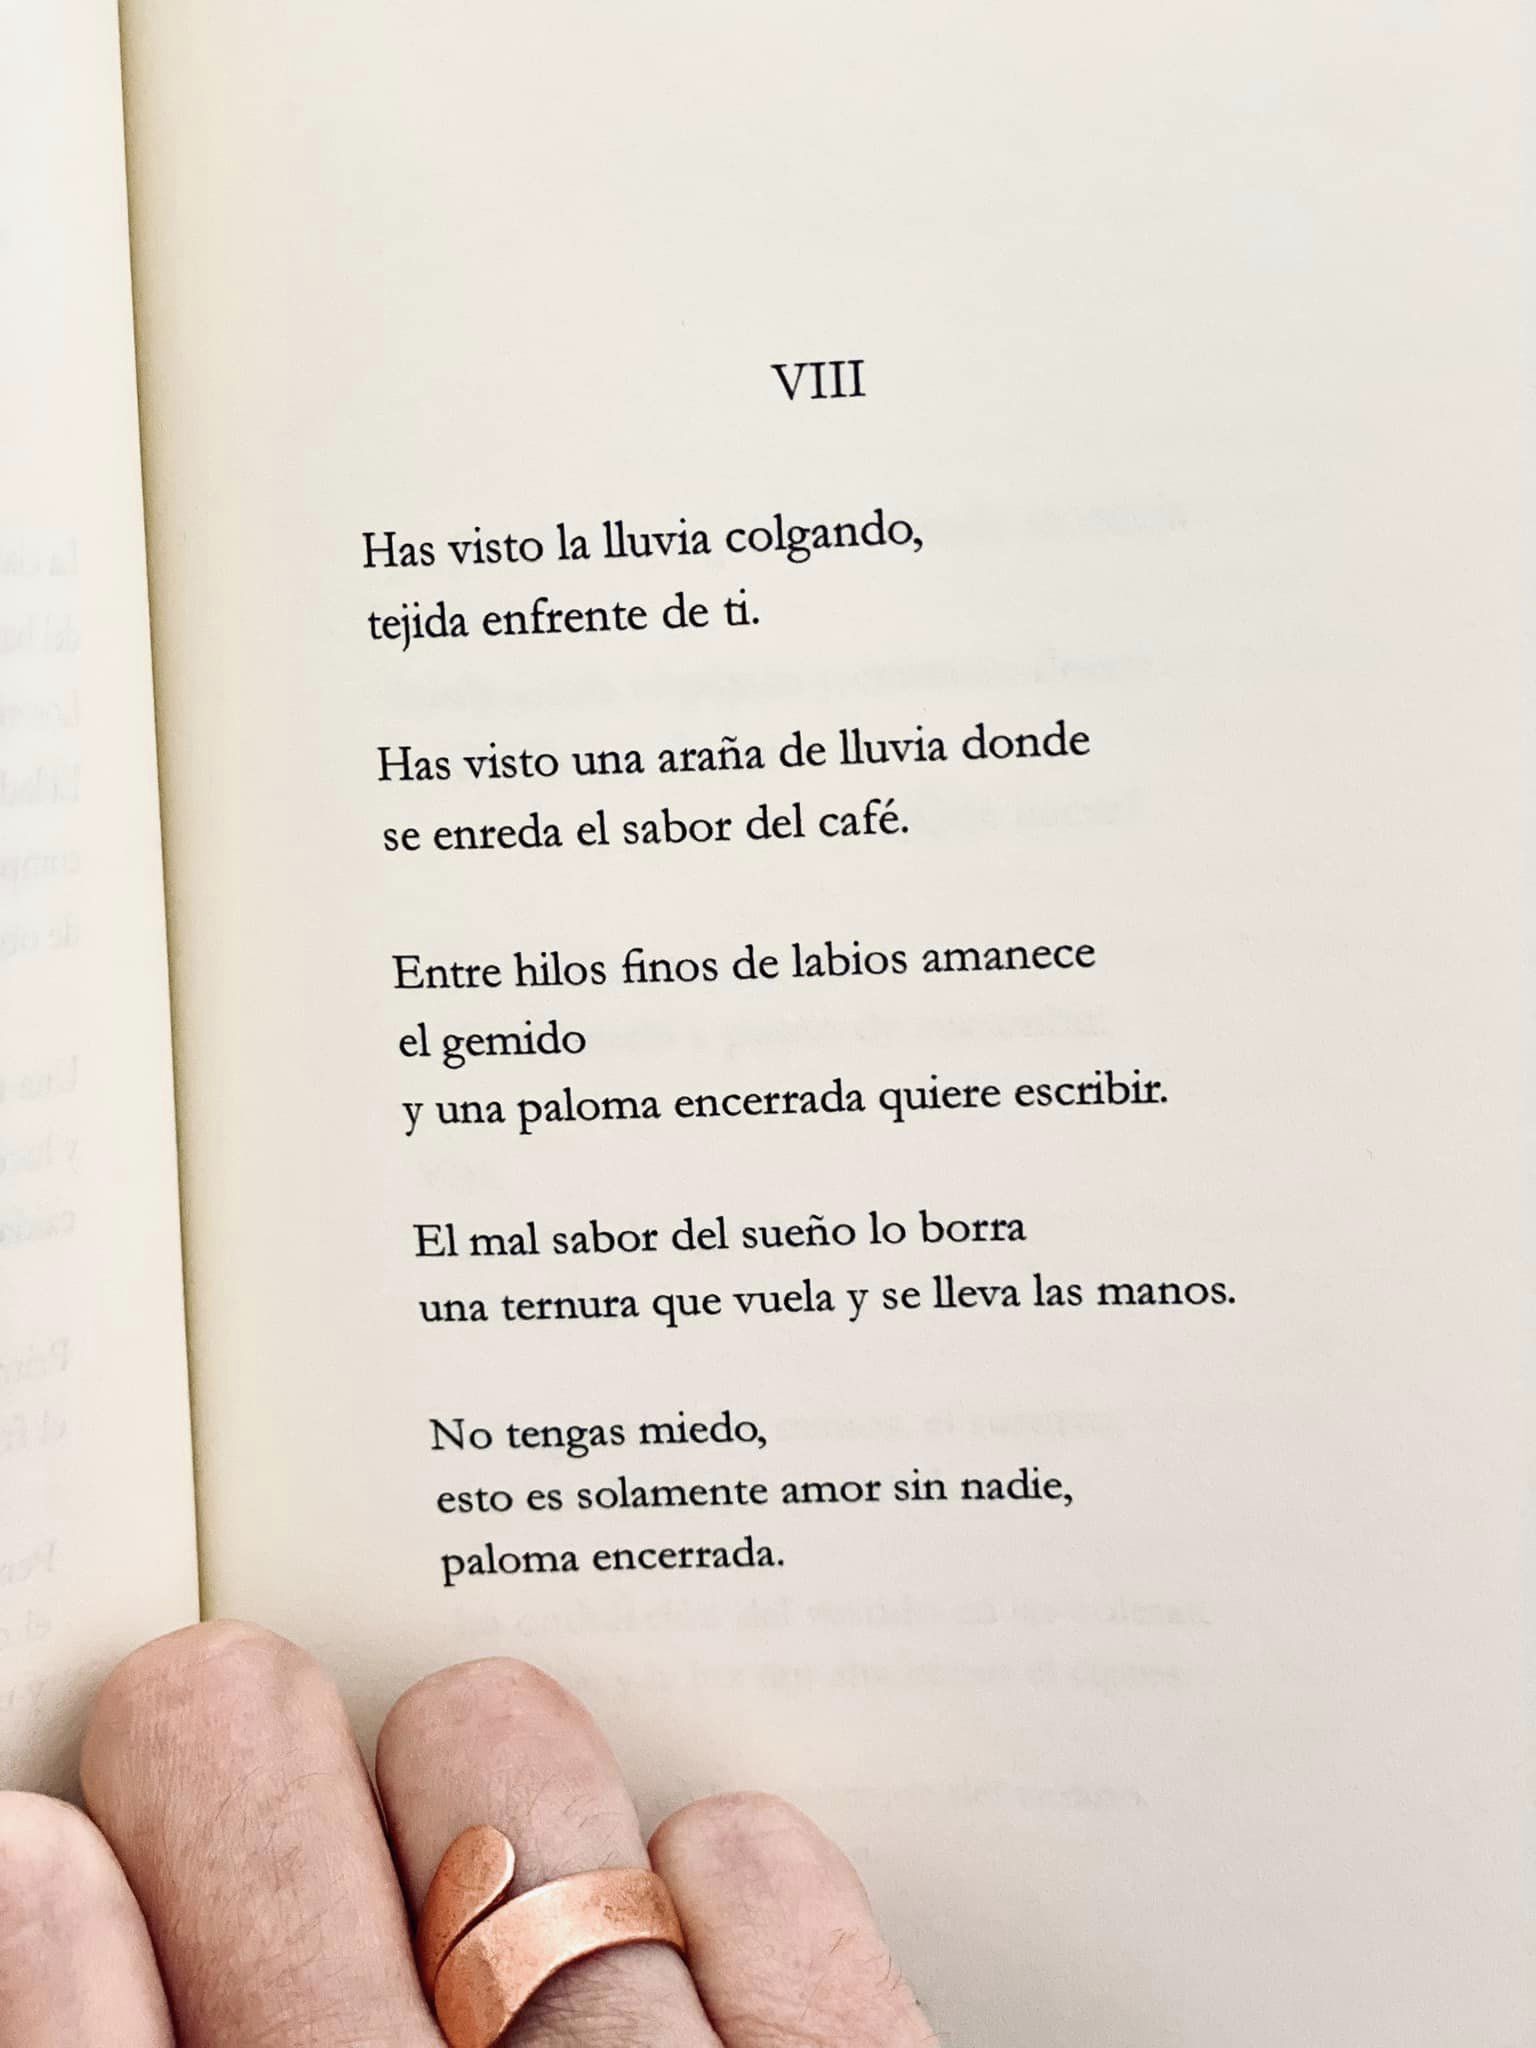 Poema VIII de "La oración de Narciso" (2023)